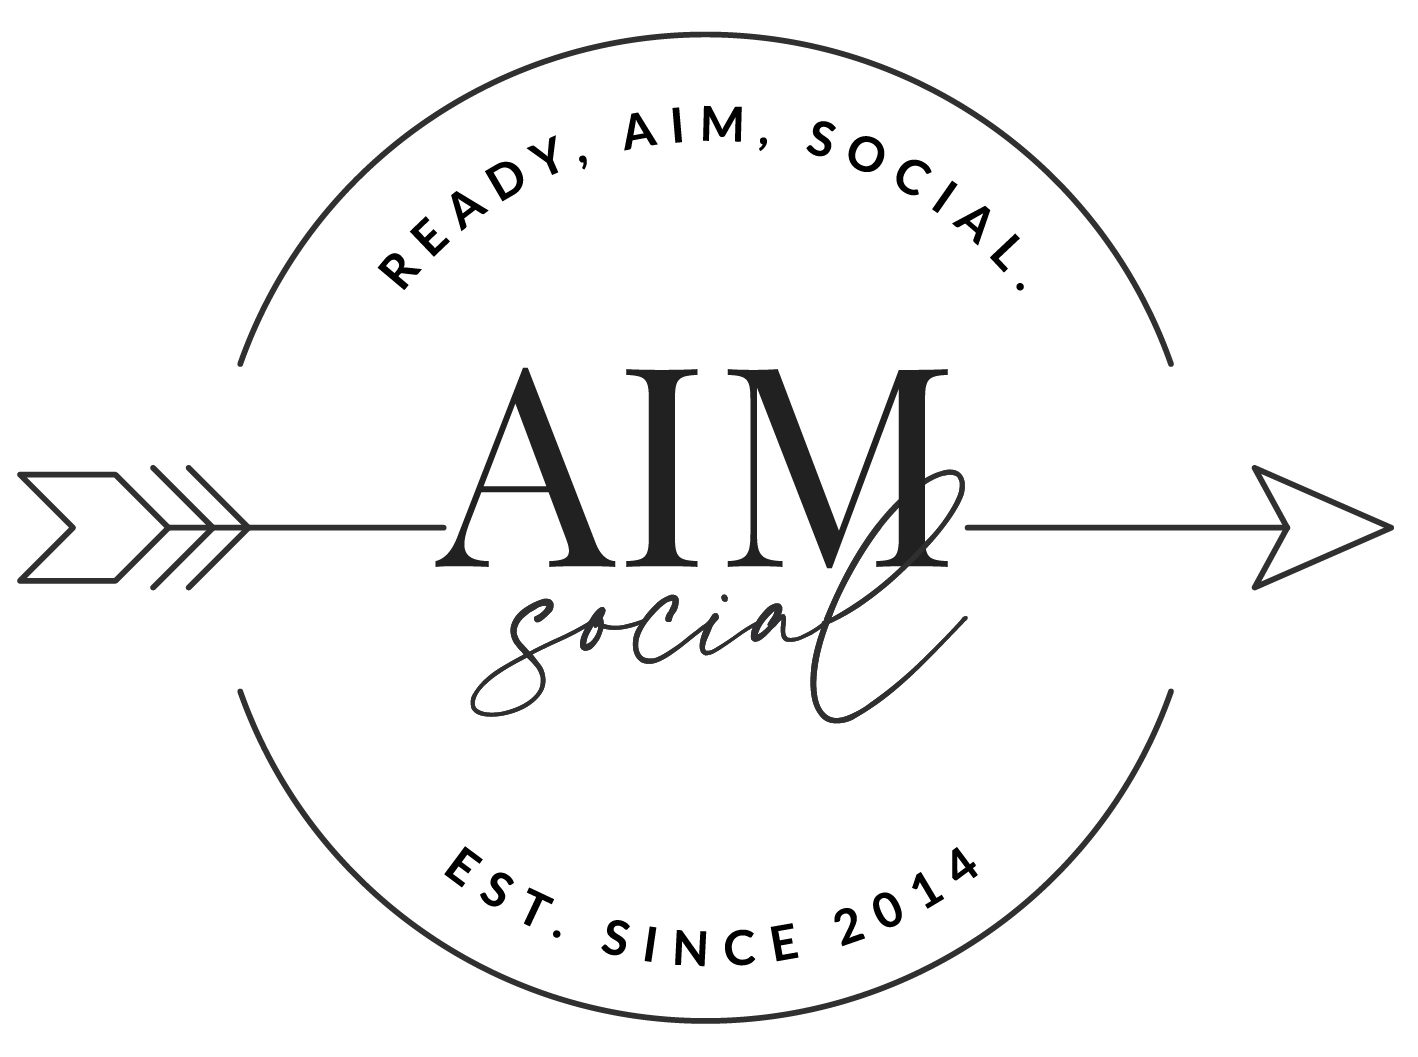 AIM Social Media Marketing